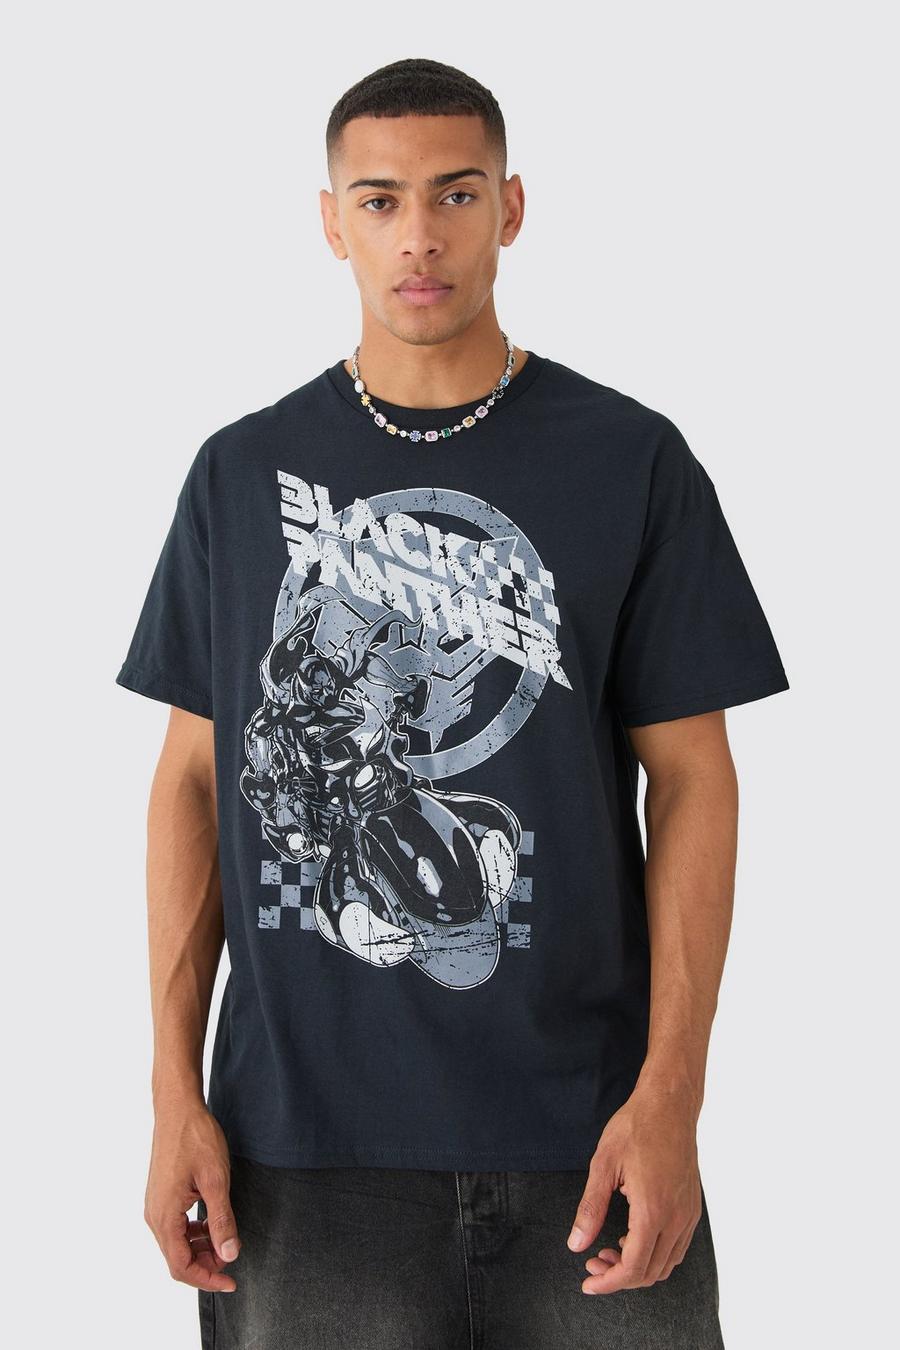 Oversized Gelicenseerd Black Panther Biker T-Shirt